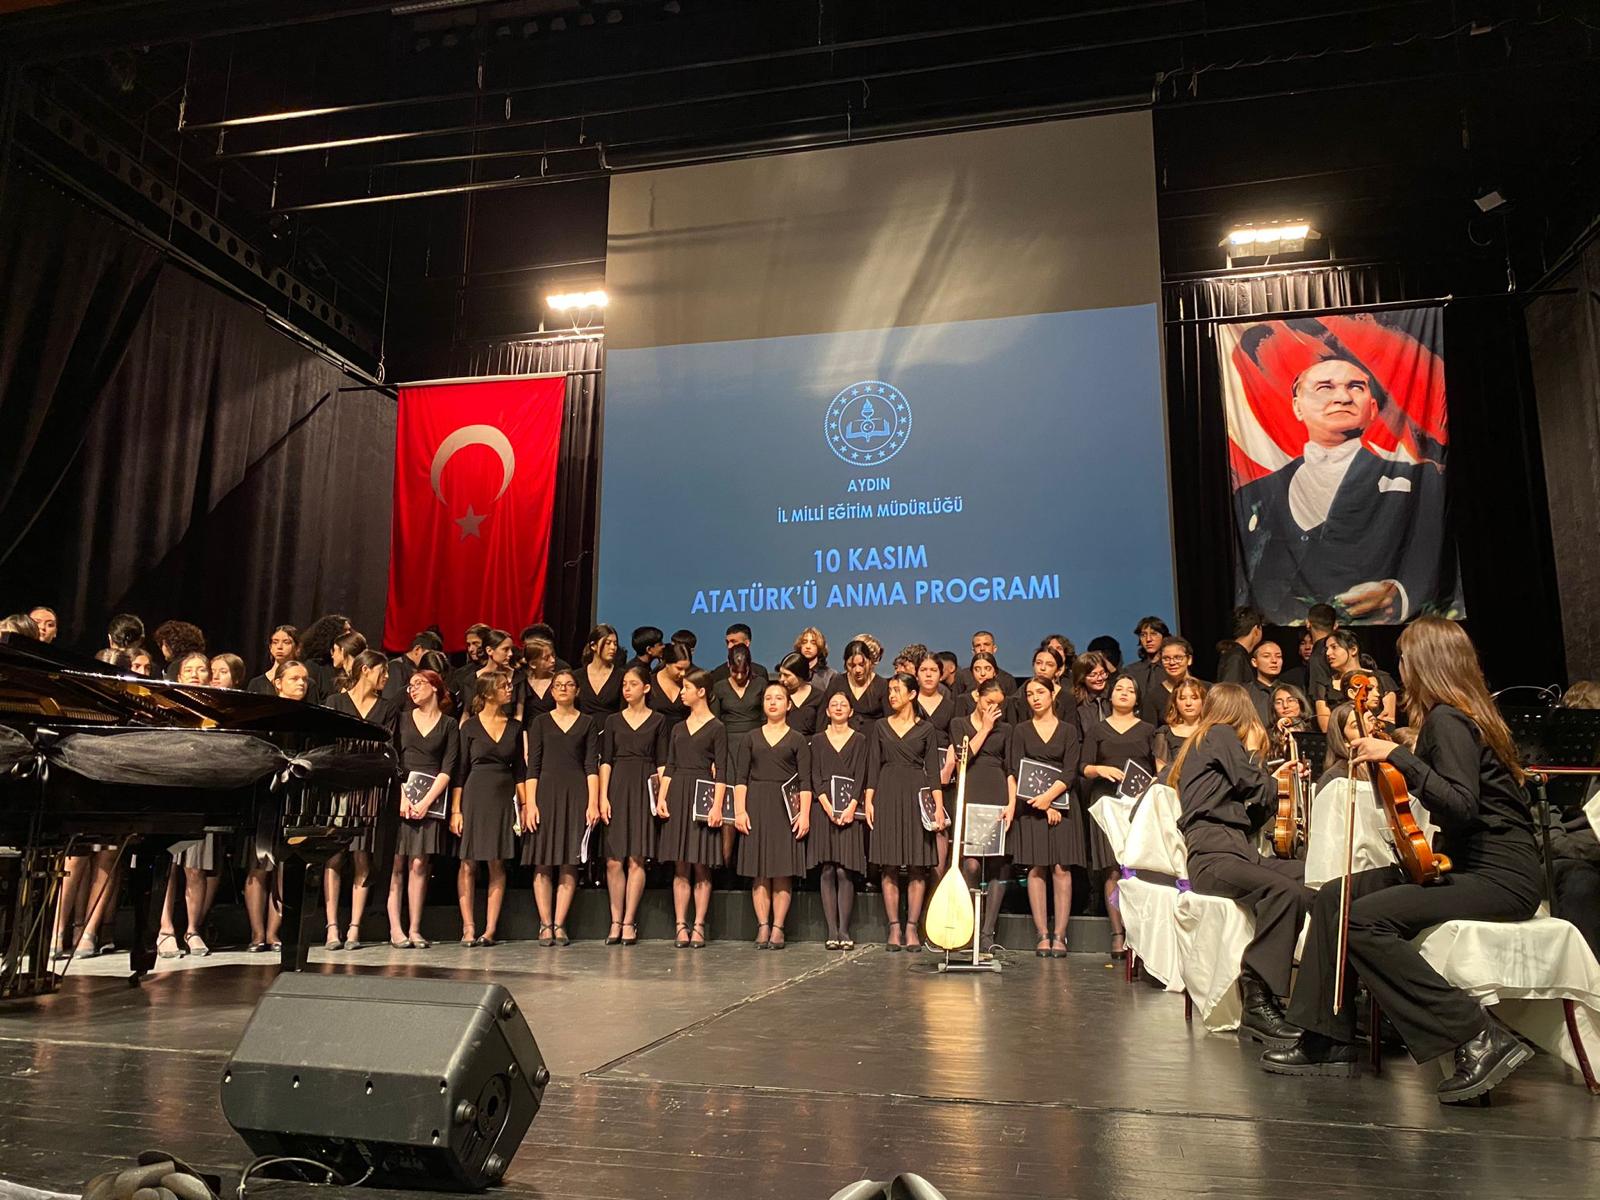 Aydın’da 10 Kasım Atatürk’ü Anma Töreni gerçekleştirildi